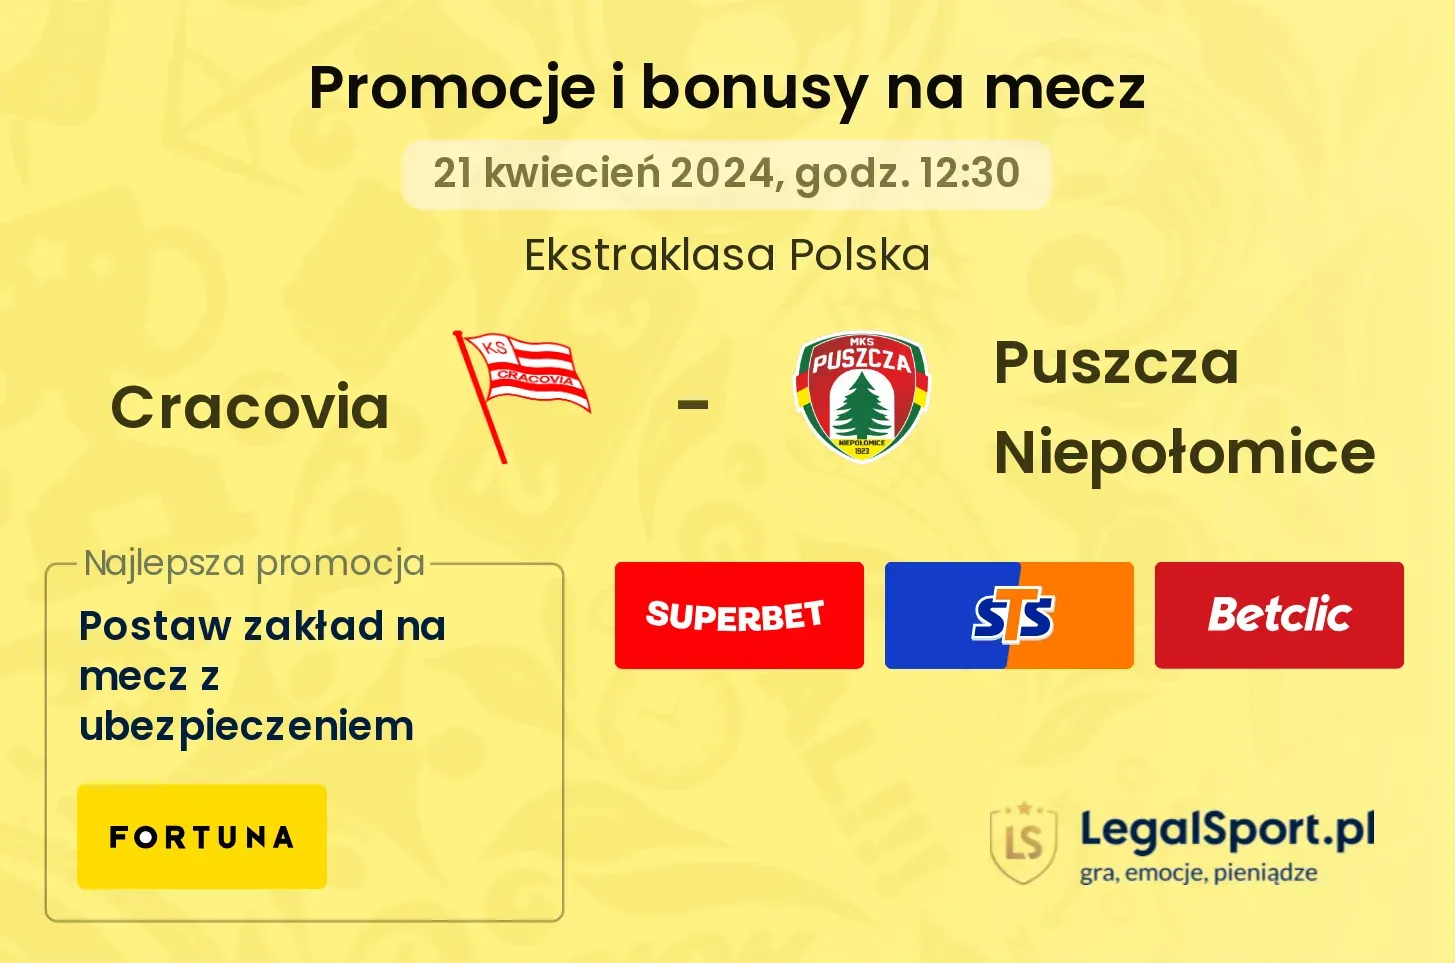 Cracovia - Puszcza Niepołomice promocje bonusy na mecz